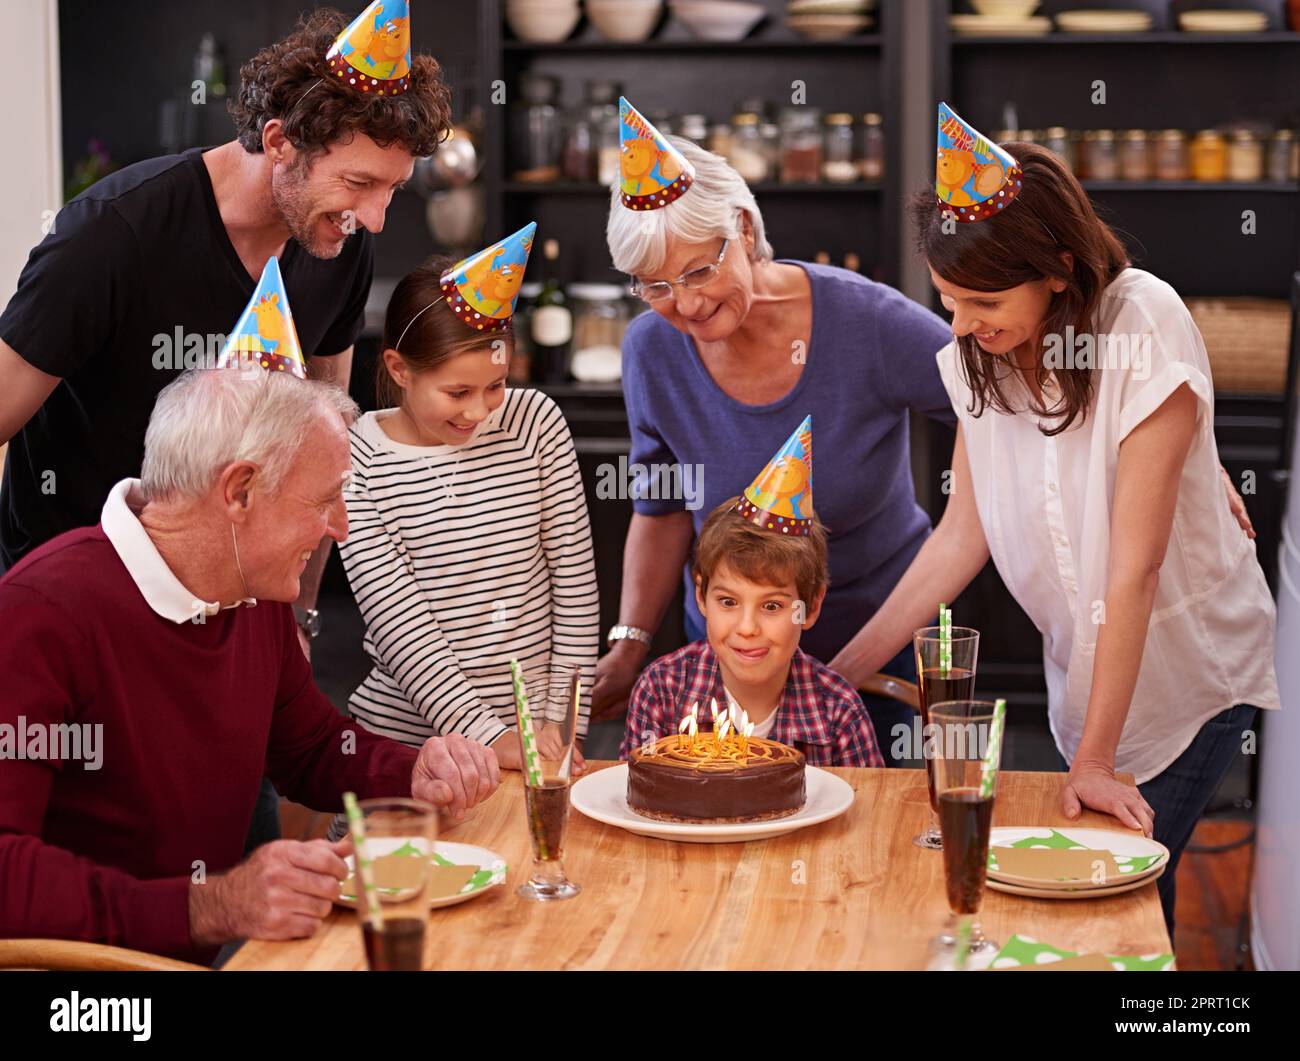 Zeit, Ihre Kerzen auszublasen. Ein glücklicher kleiner Junge feiert seinen Geburtstag mit seiner Familie. Stockfoto